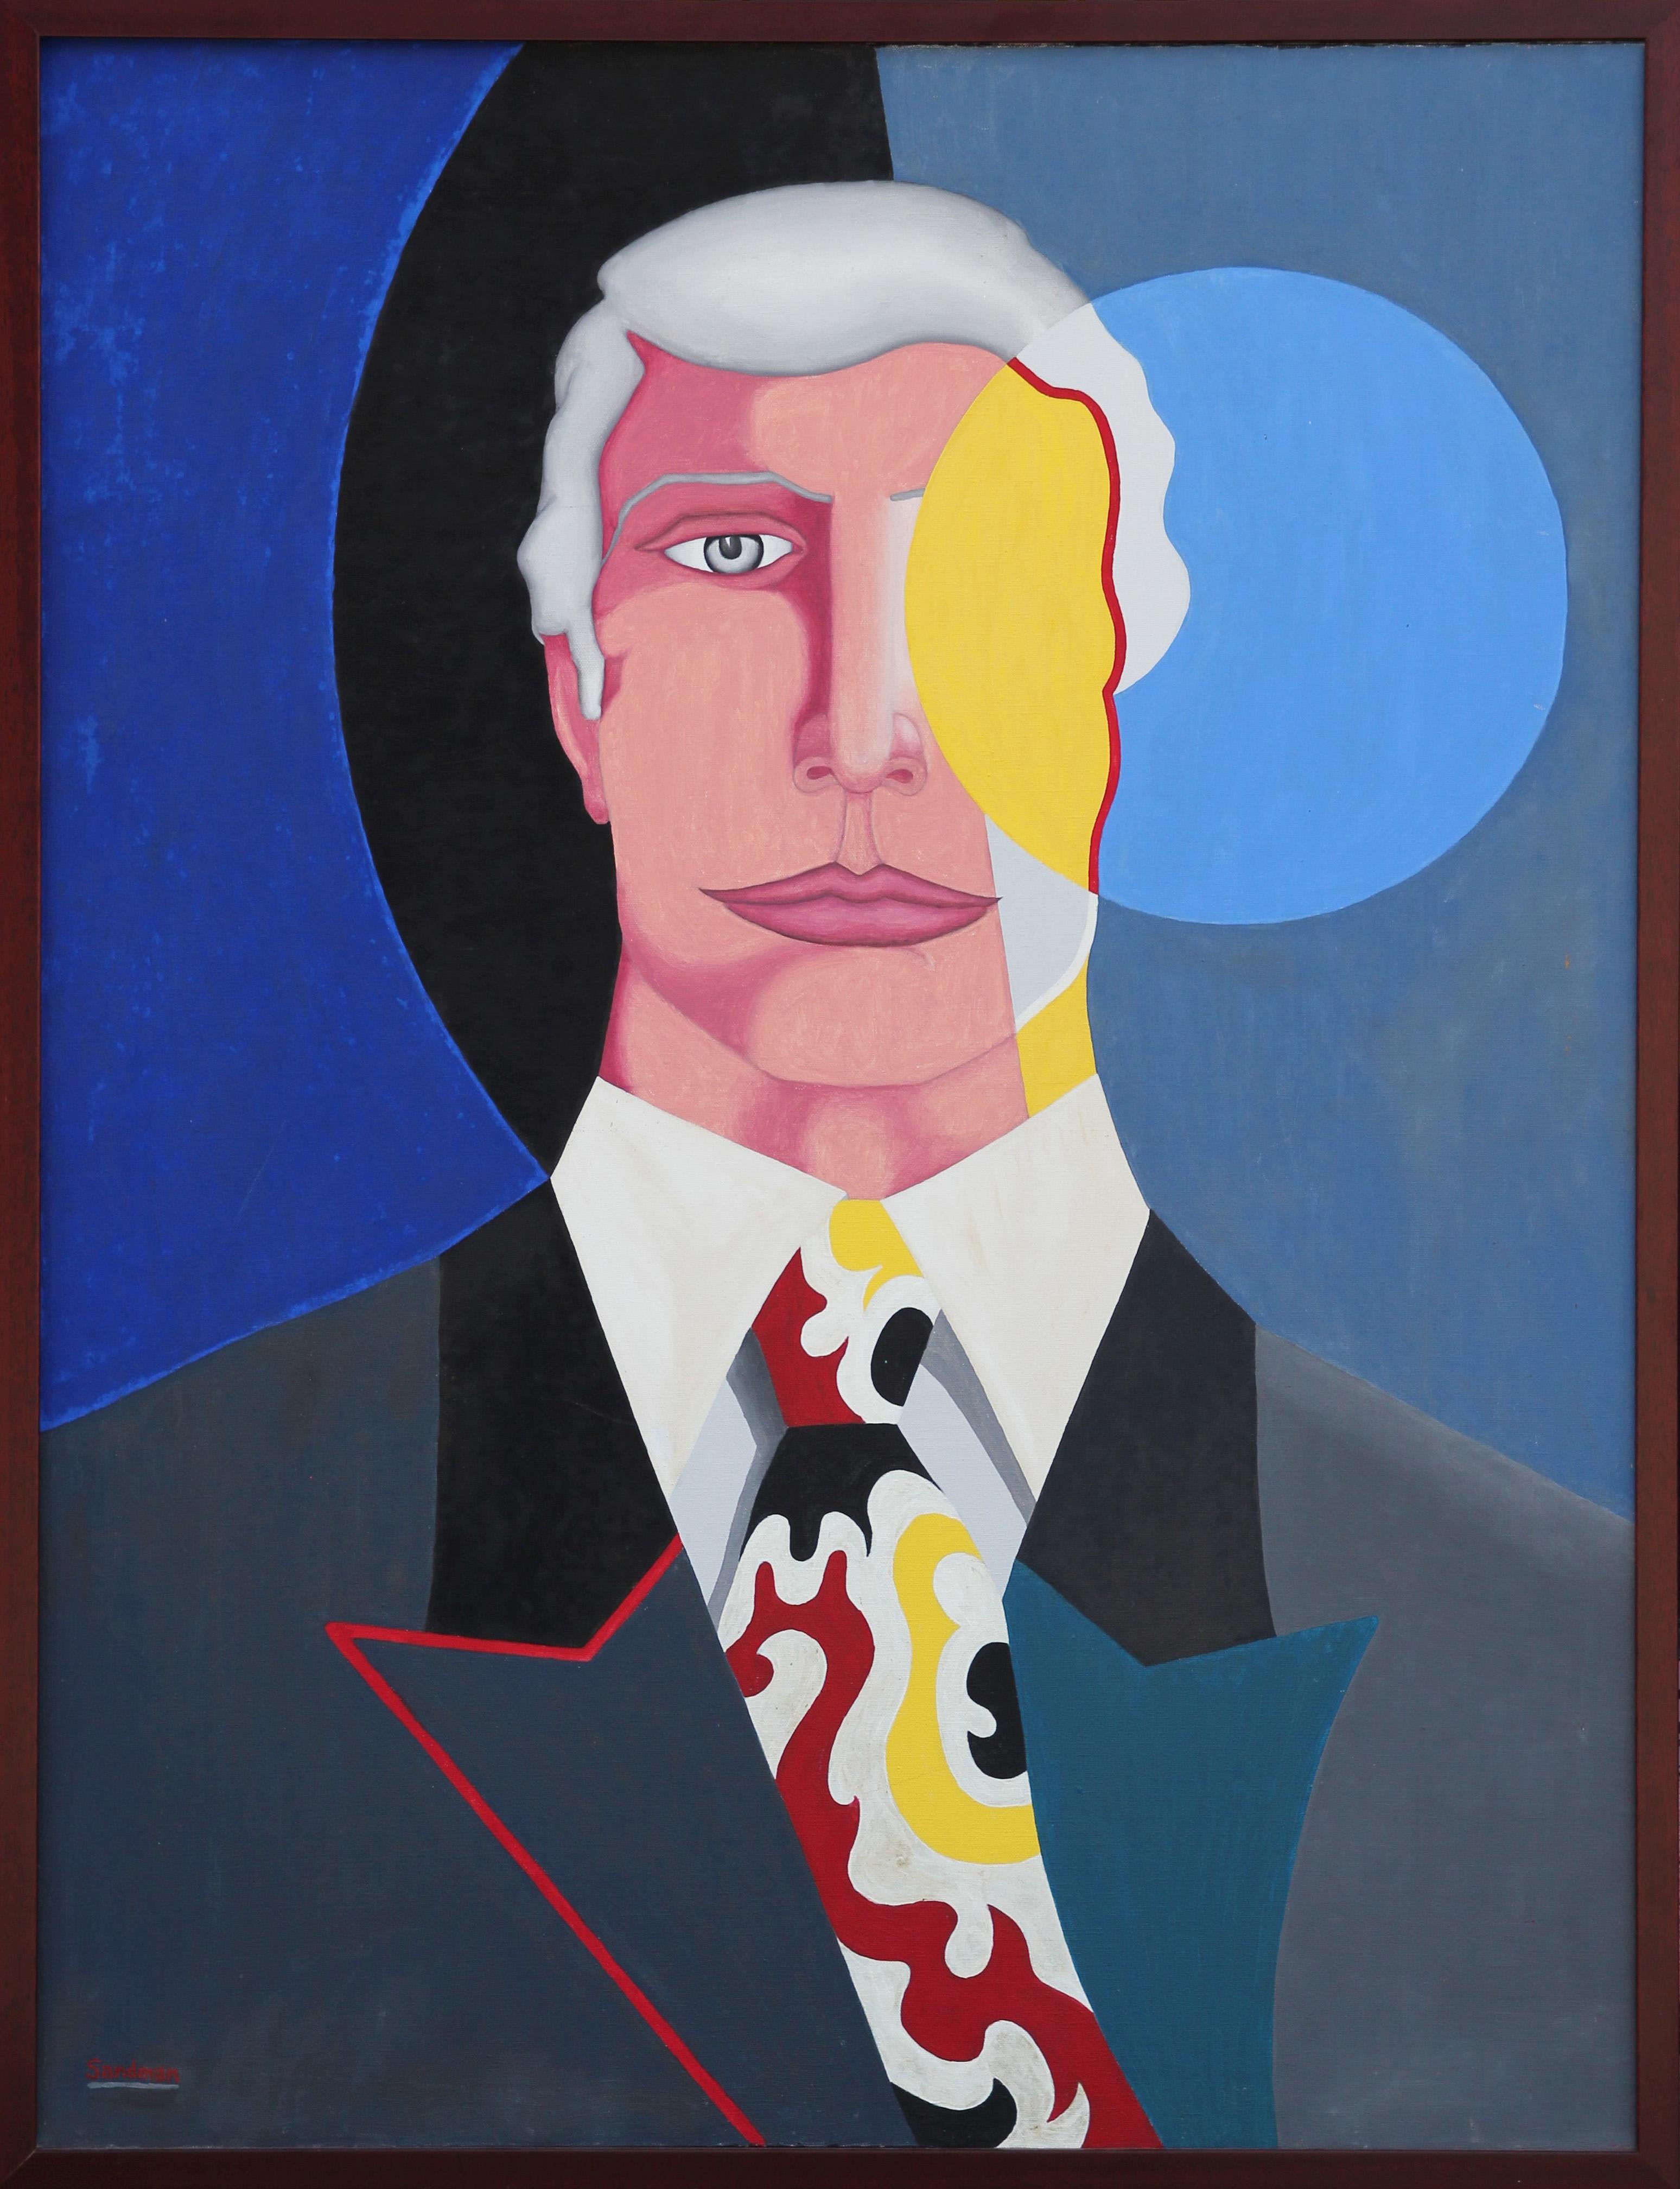 Portrait Painting Robert Sandman - « The Vision » - Peinture de portrait géométrique abstraite moderne bleue, rouge et jaune